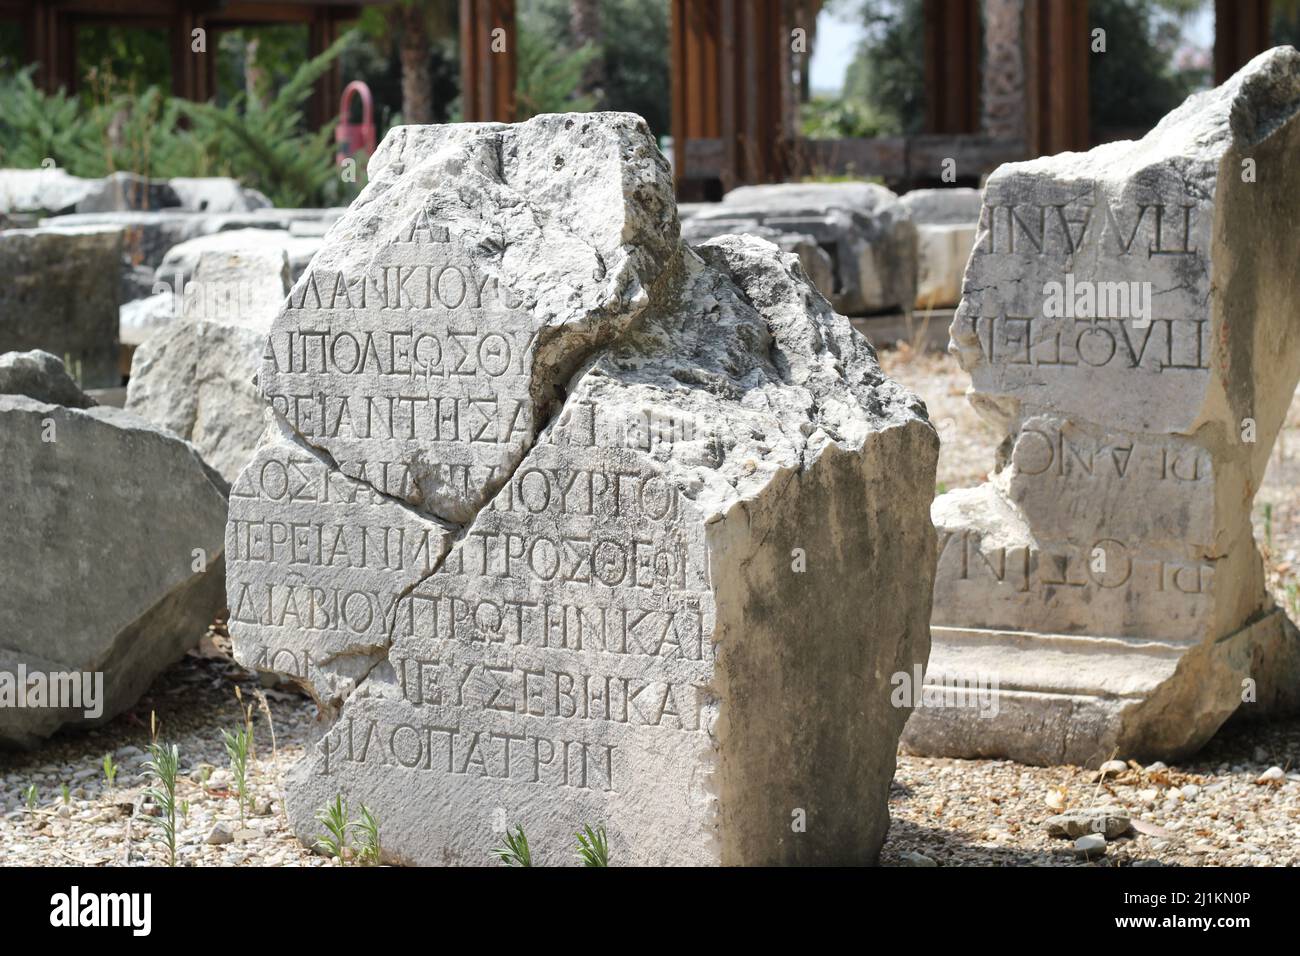 Antalya, Türkei - Juli 03 2021: Antalya Perge Ancient City alias “Perge Antik Kenti. Altgriechische Sprache auf den Spalten geschrieben. Stockfoto